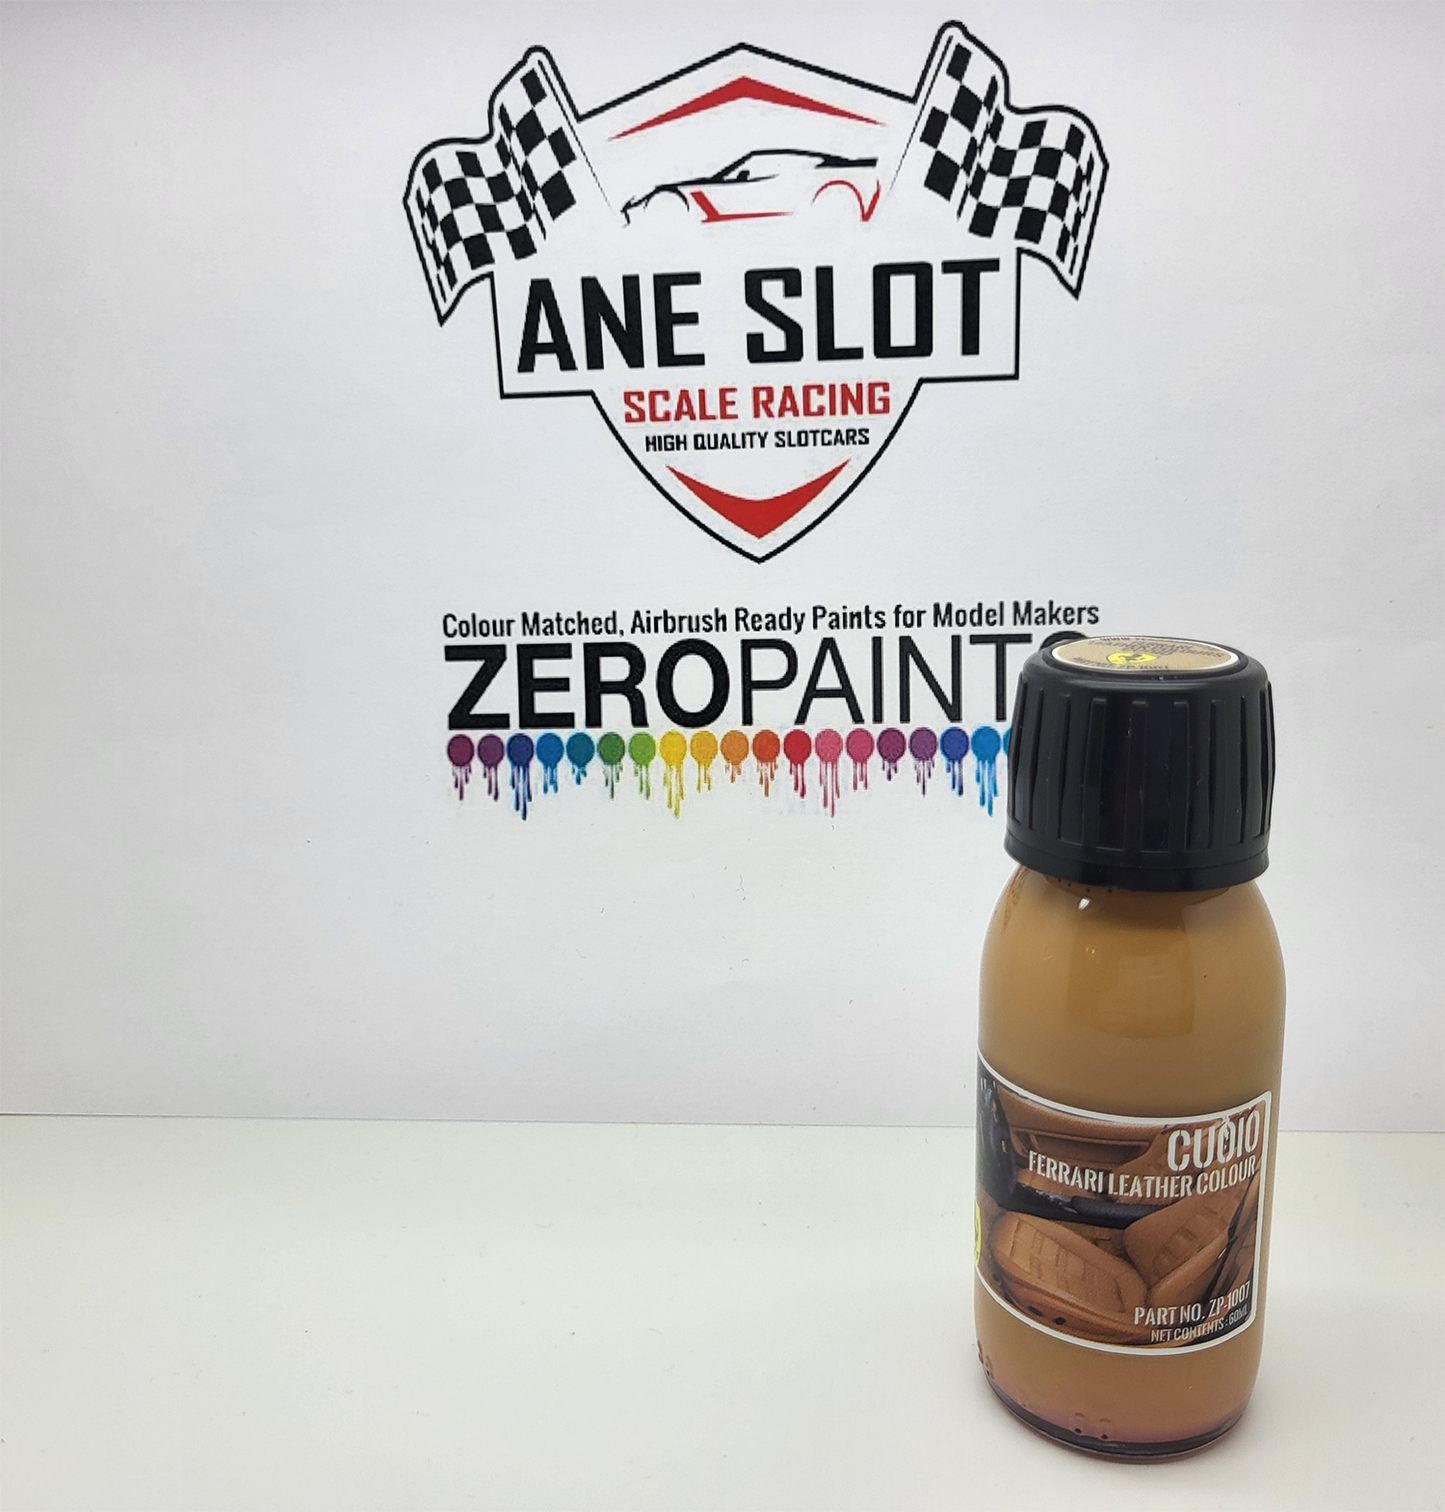 Zeropaints ZP-1007 "Ferrari Leather Colour Paints ( Cuoio )"